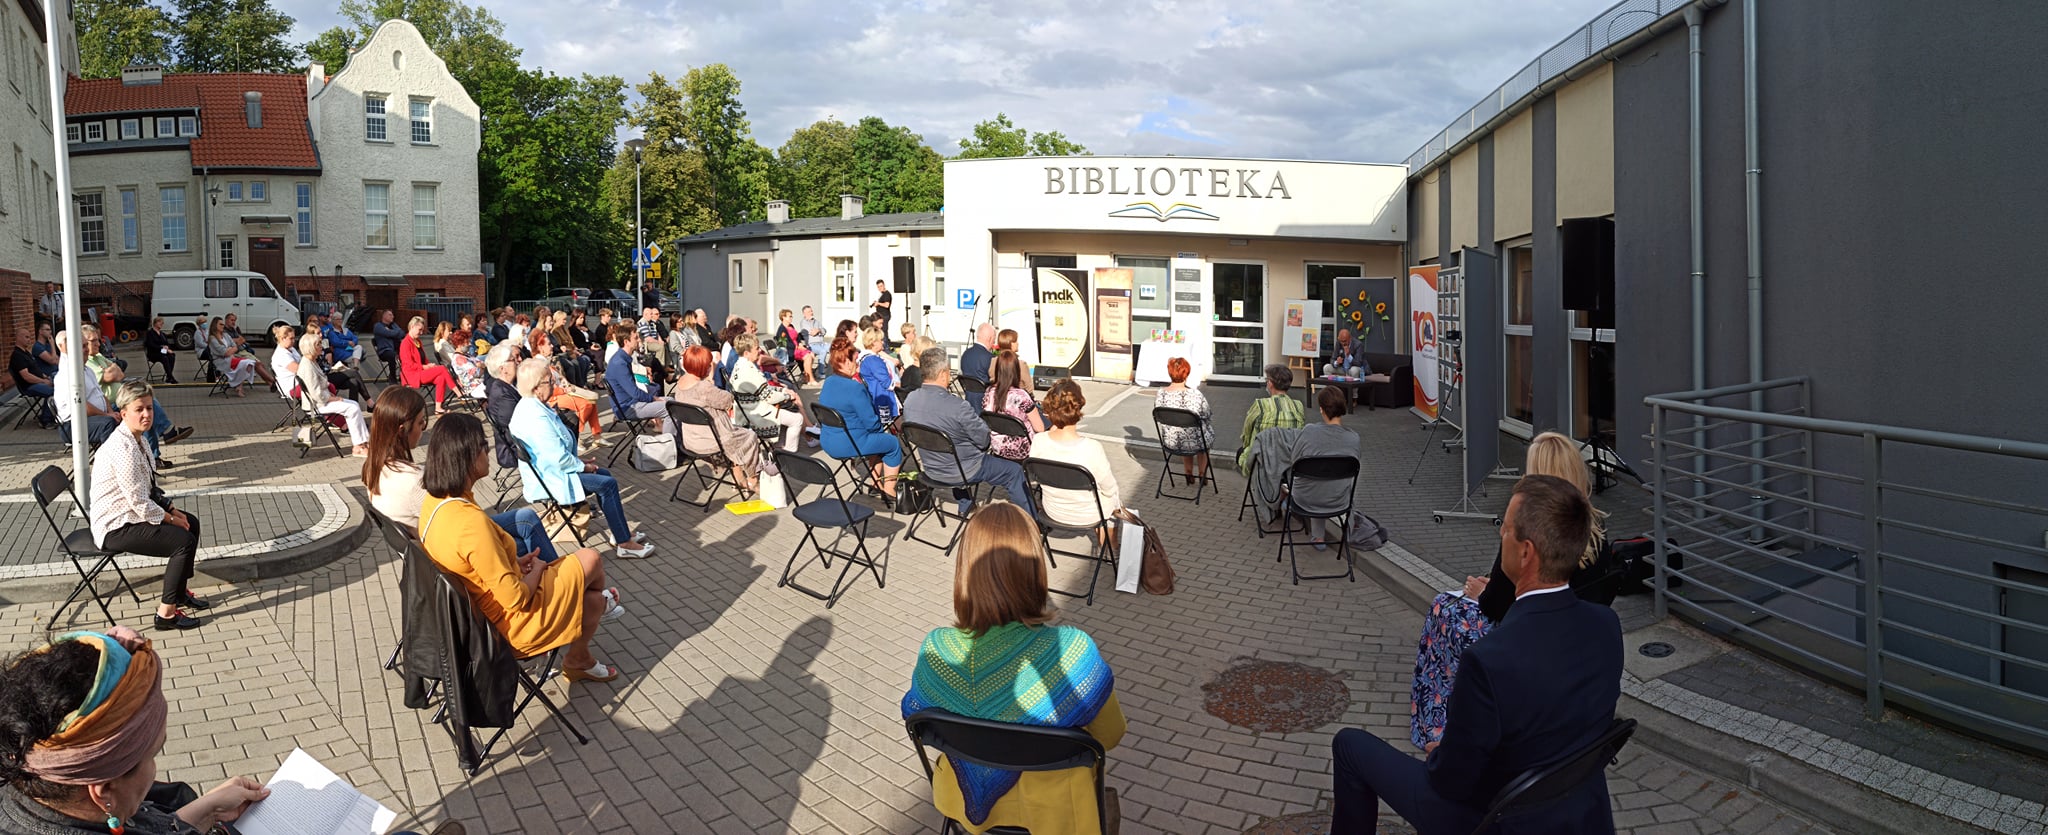 Na placu przed biblioteką w Działdowie przybyli goście którzy zajęli miejsce na krzesełkach by wysłuchać spotkania poezji. Była to promocja publikacji wspomnieniowej ,,7 lat Powiatowych Wieczorów z Poezją. 